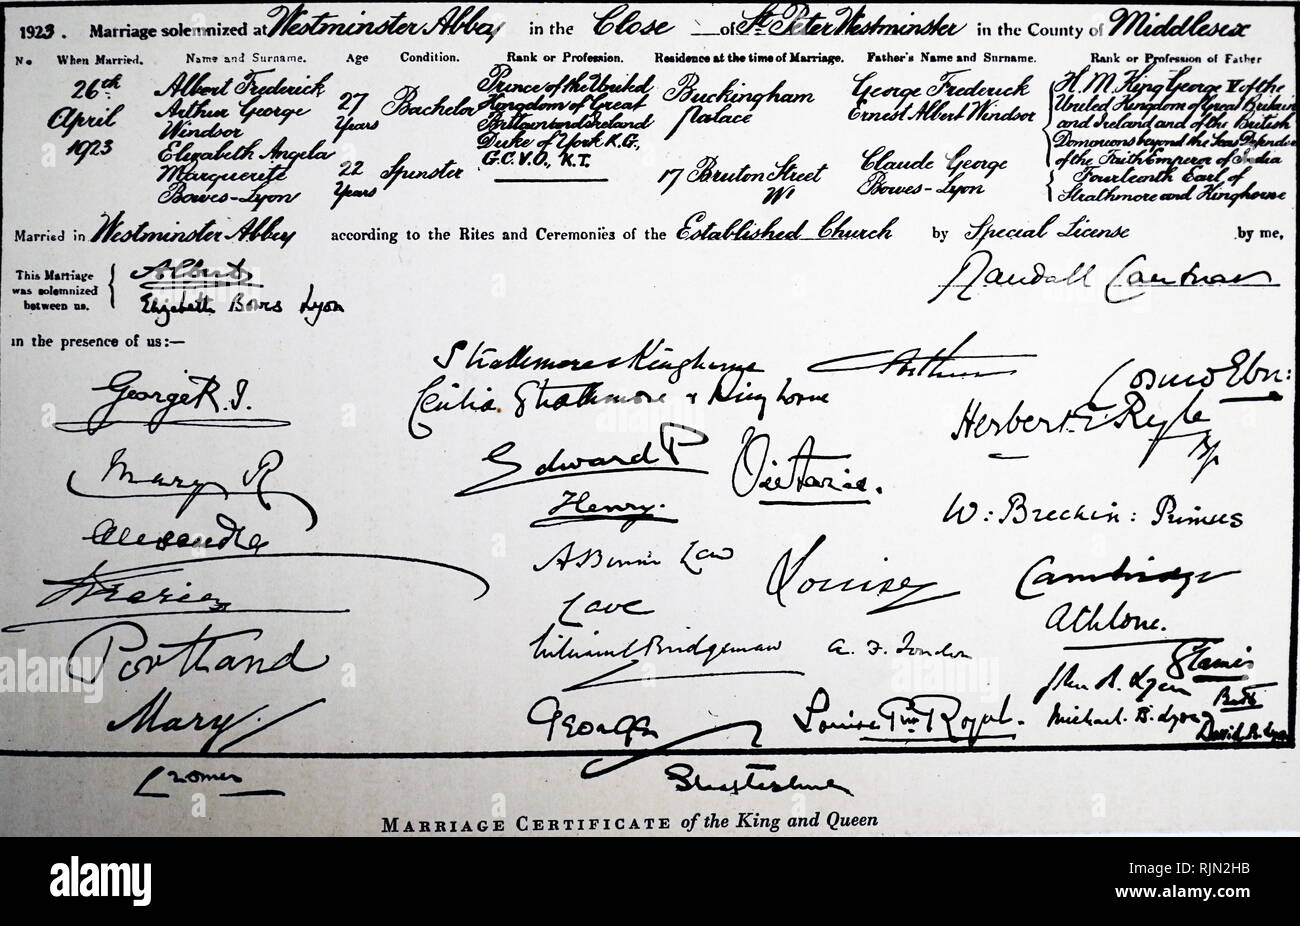 Certificat de mariage du duc et de la duchesse d'York (futur roi George VI et La Reine Elizabeth), 1923 Banque D'Images